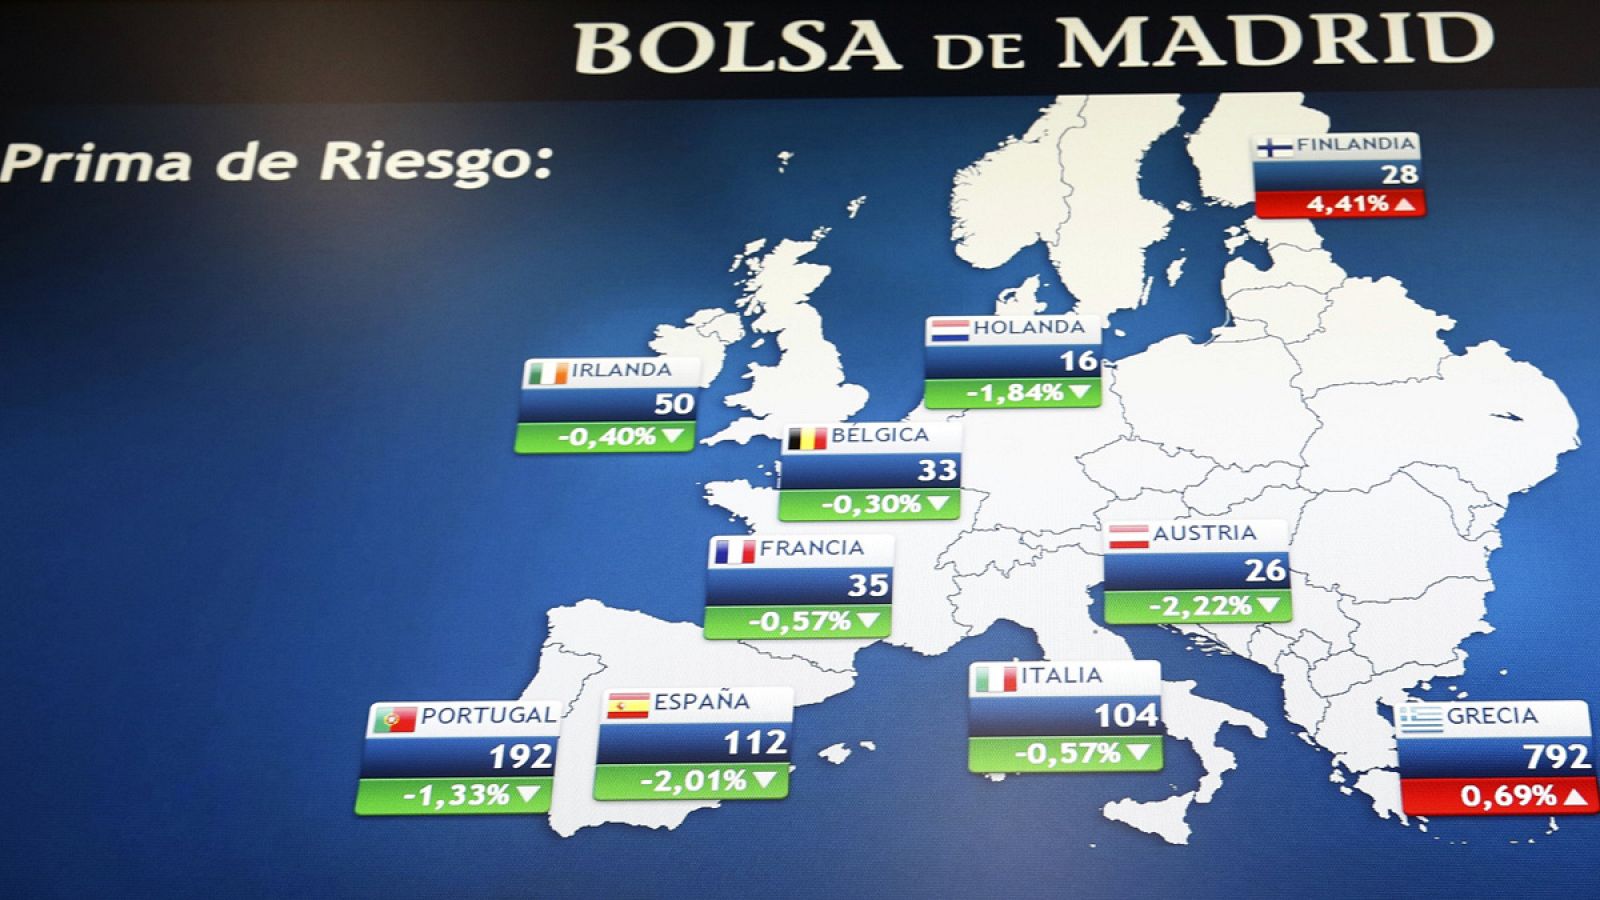 Panel de la Bolsa de Madrid que muestra el valor de la prima de riesgo en los principales países de la zona euro